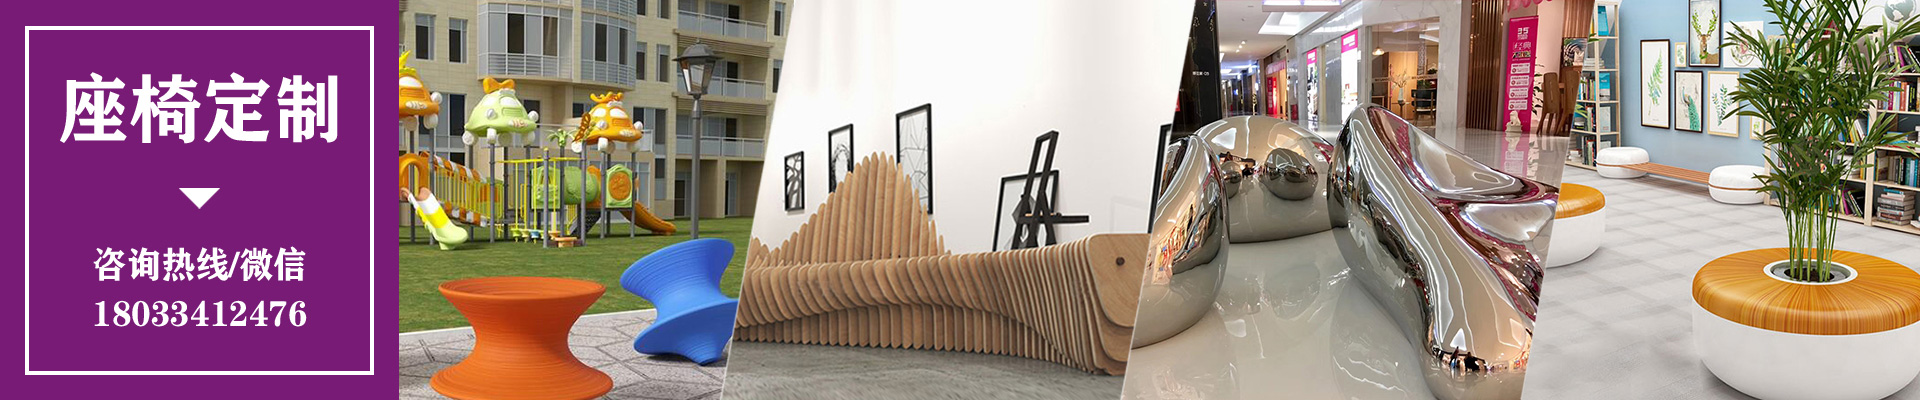 木质走廊街区异形切片坐凳